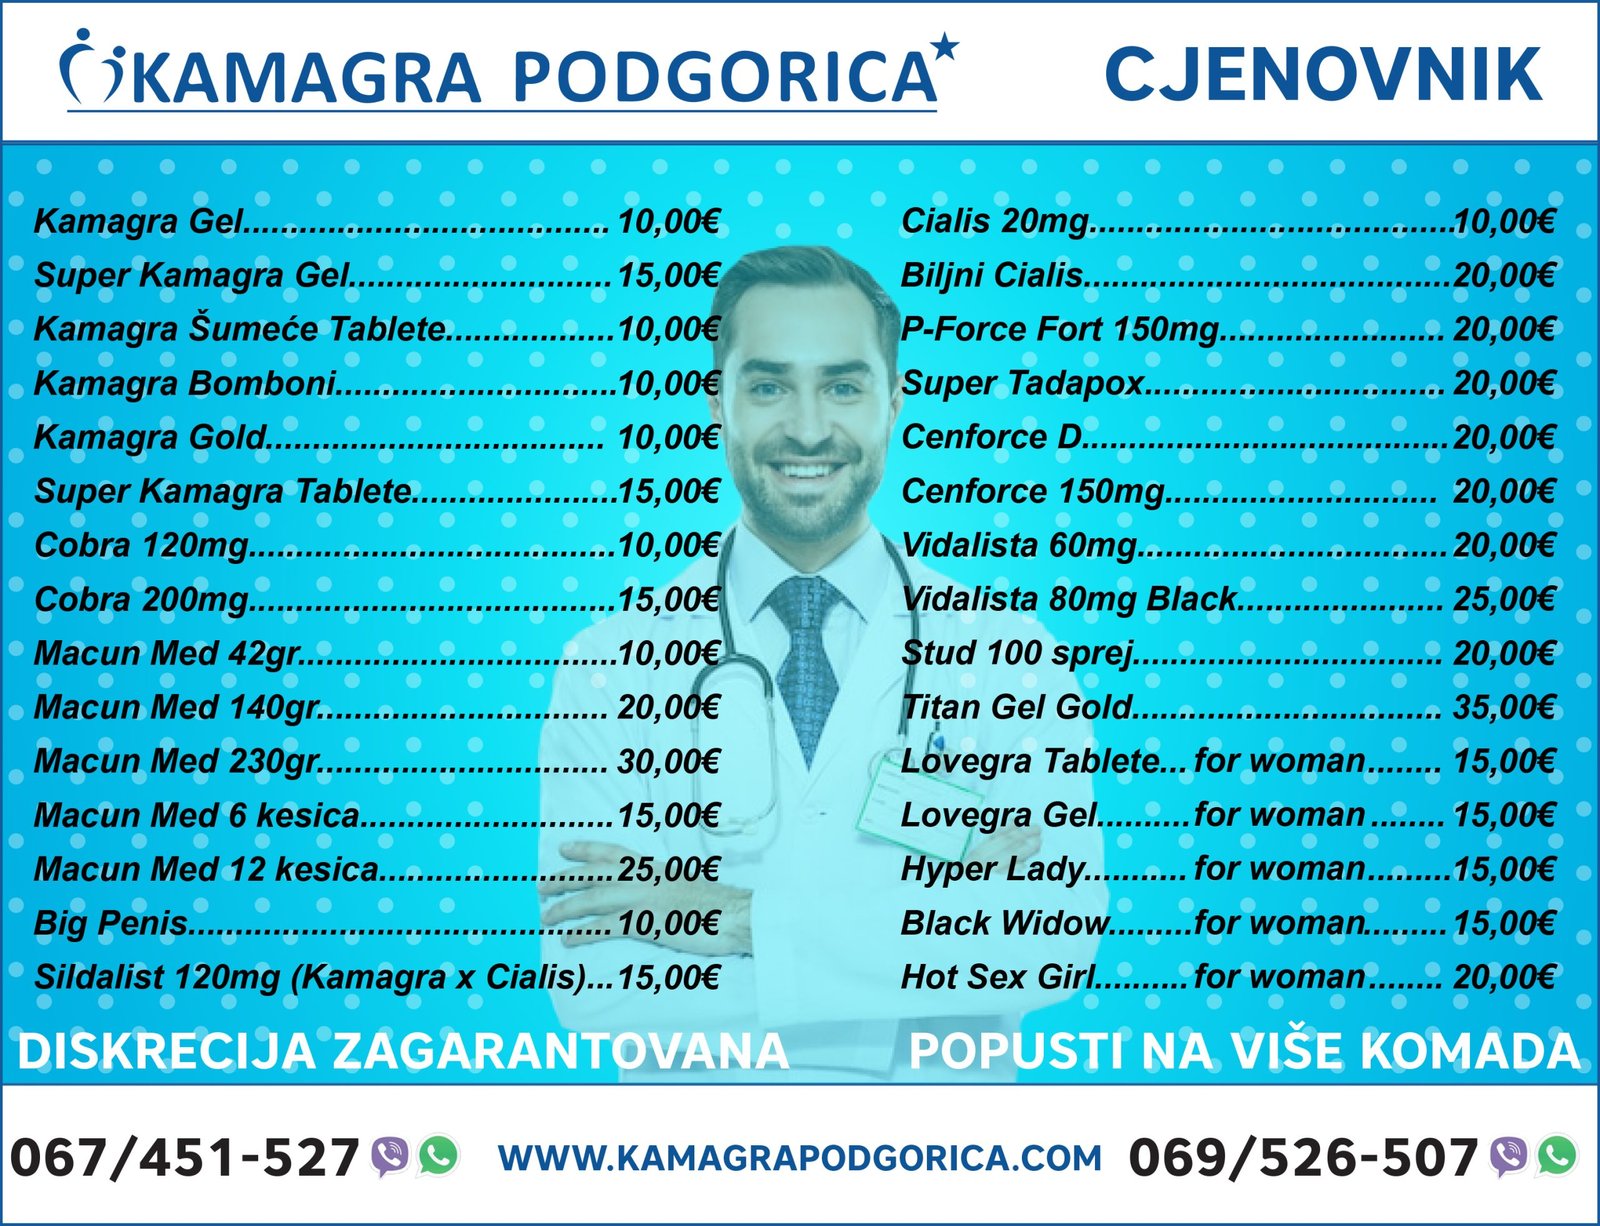 Cjenovnik Kamagra Podgorica